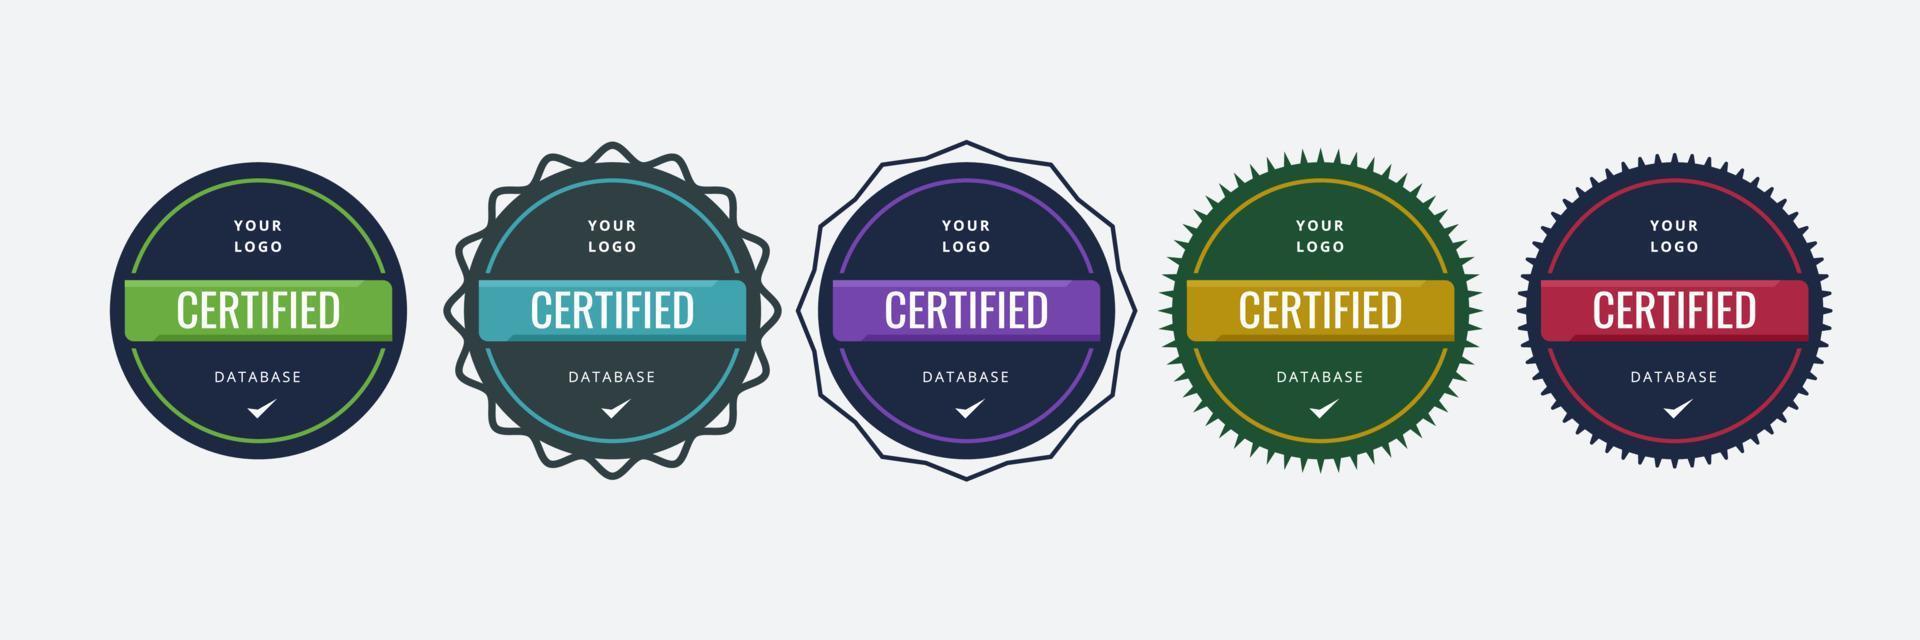 zertifizierte digitale Logo-Designvorlage für Firmenschulungen vektor